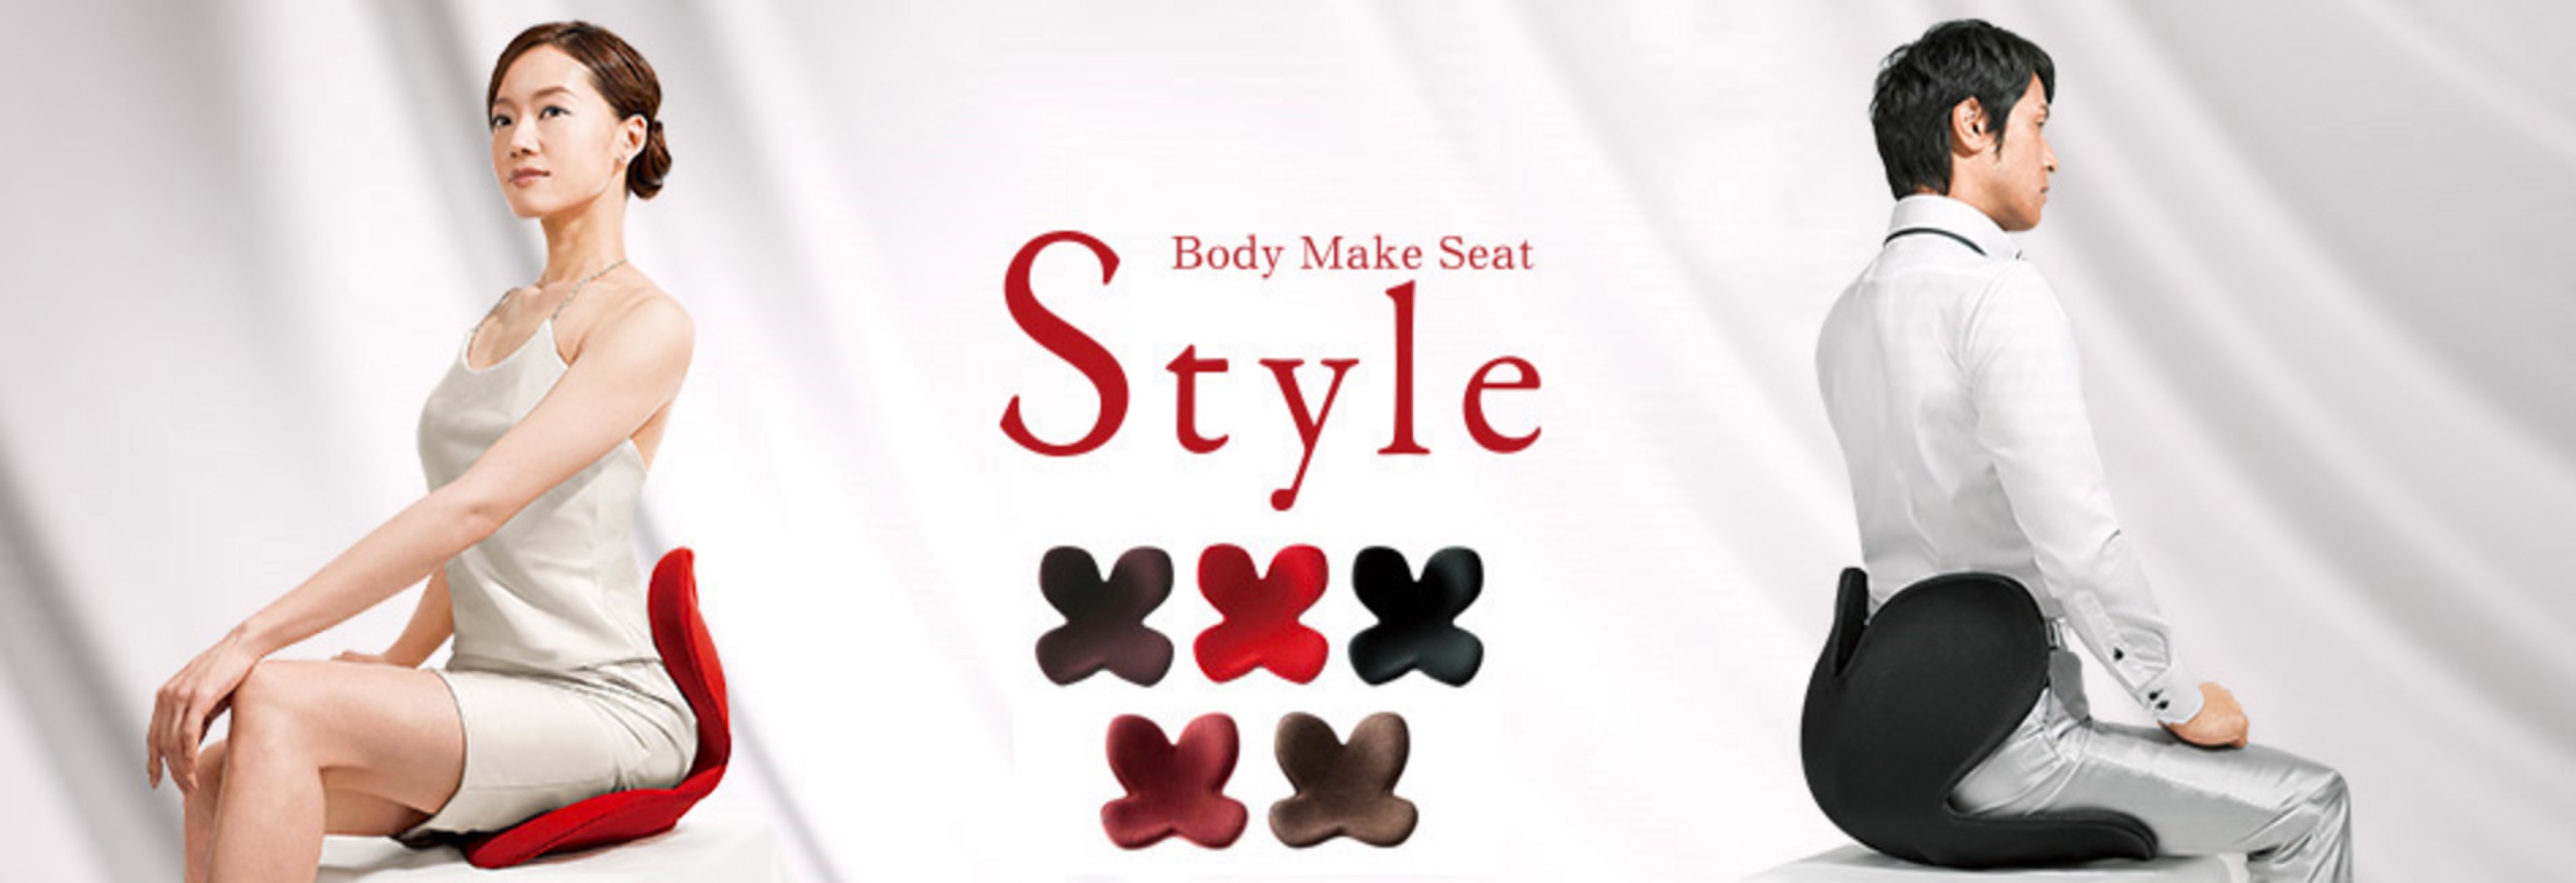 骨盤を立てて座る姿勢をサポートしてくれる「Style」で背筋の伸びたきれいな姿勢で座れるようになろう | 経験知